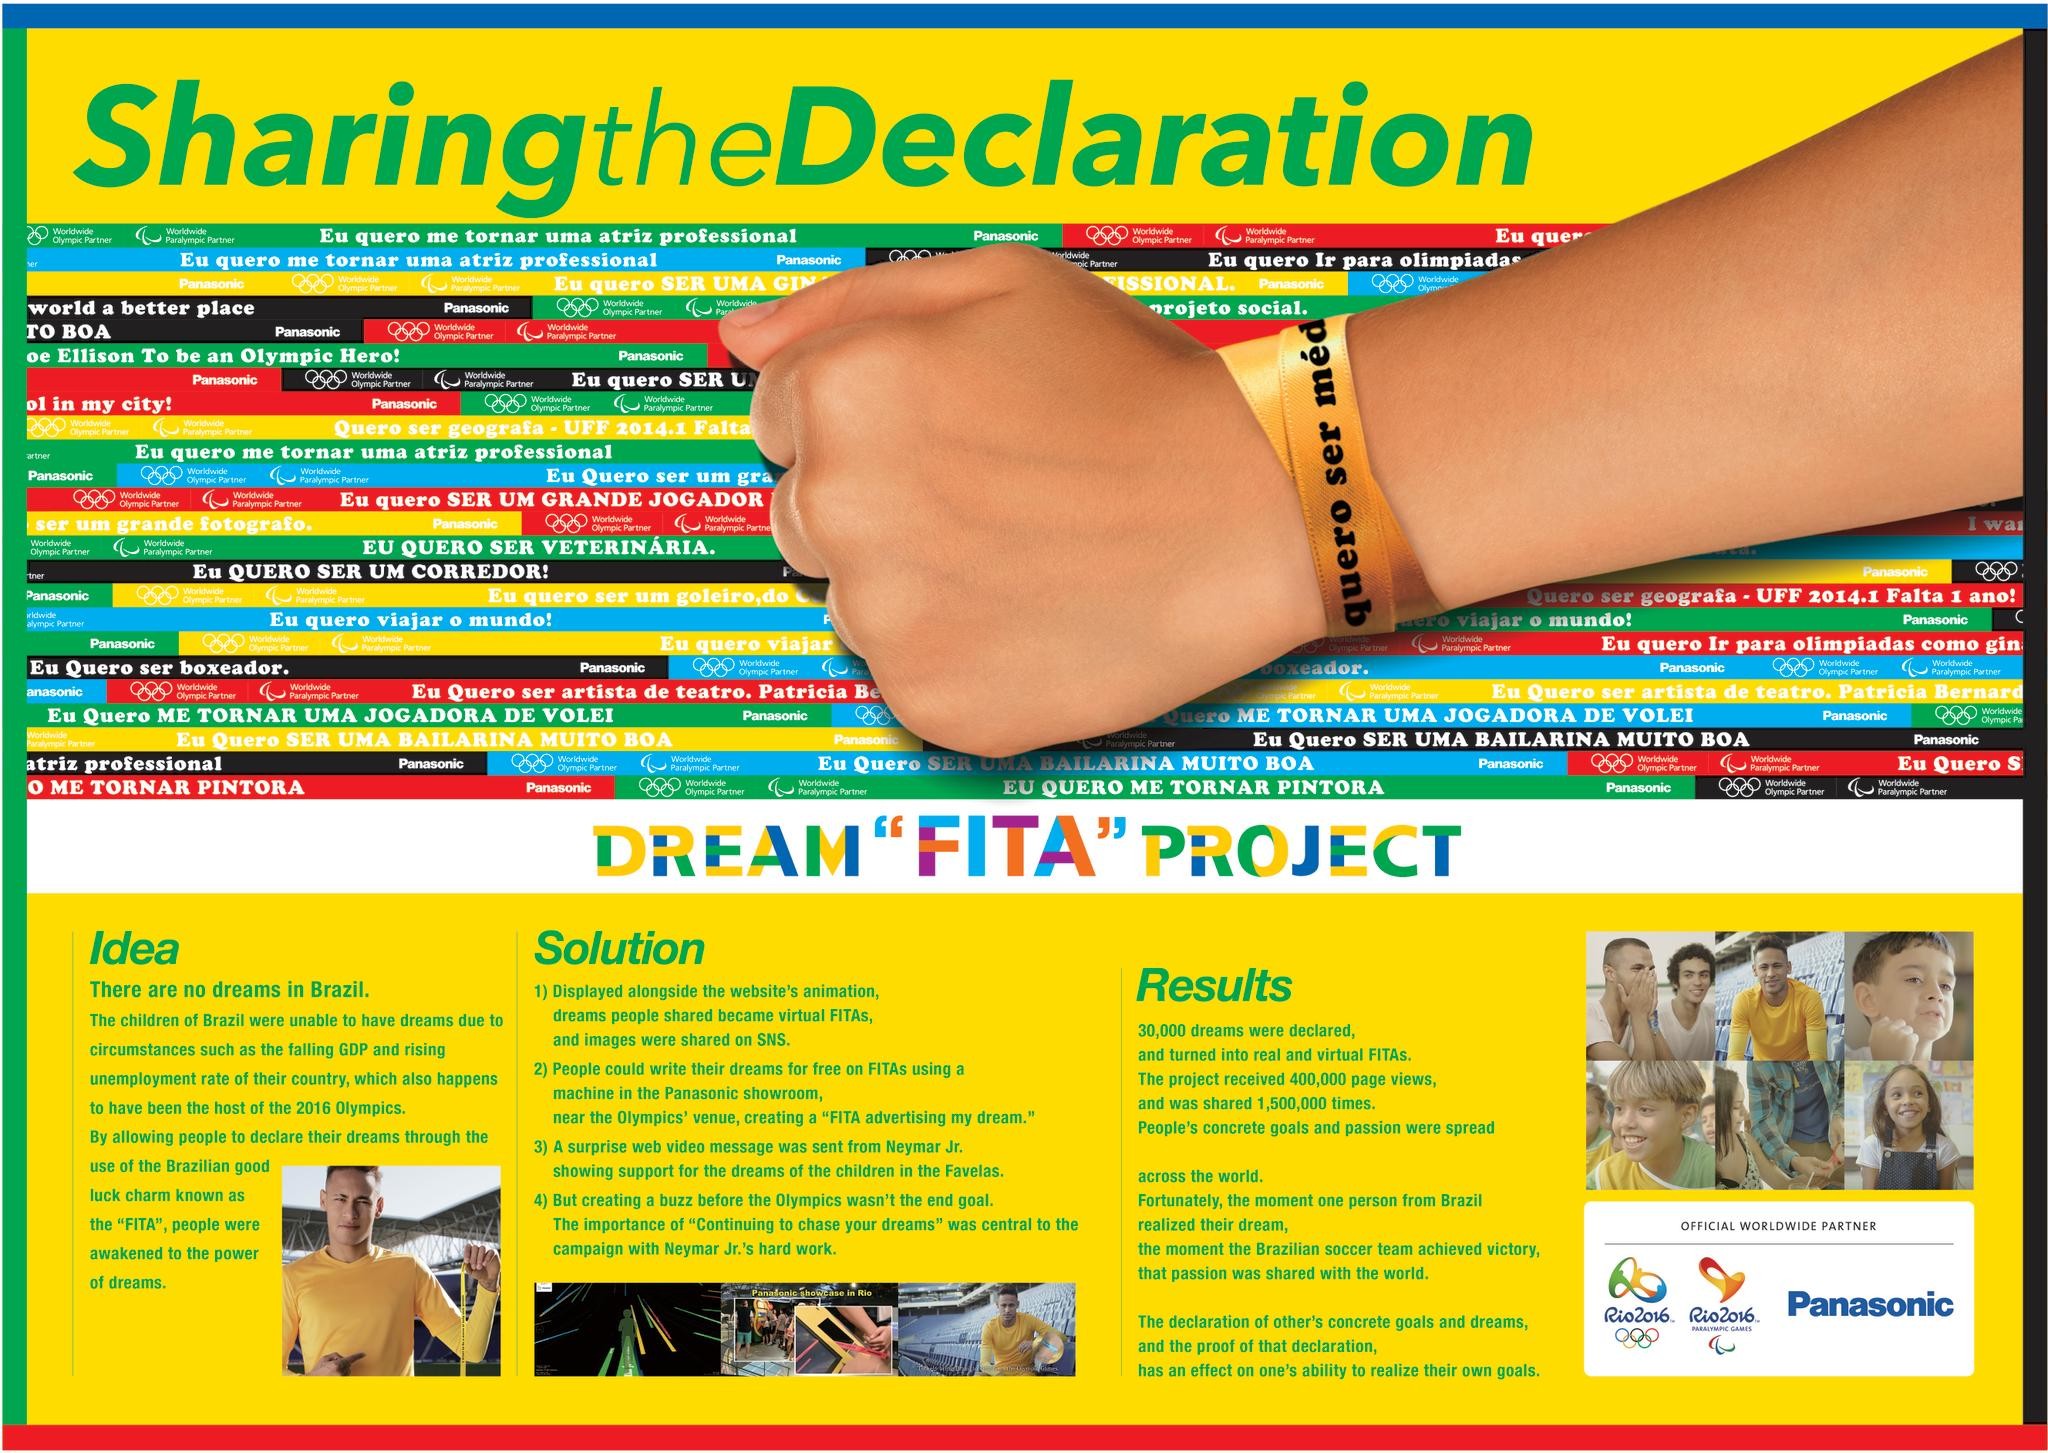 Dream "FITA" Project